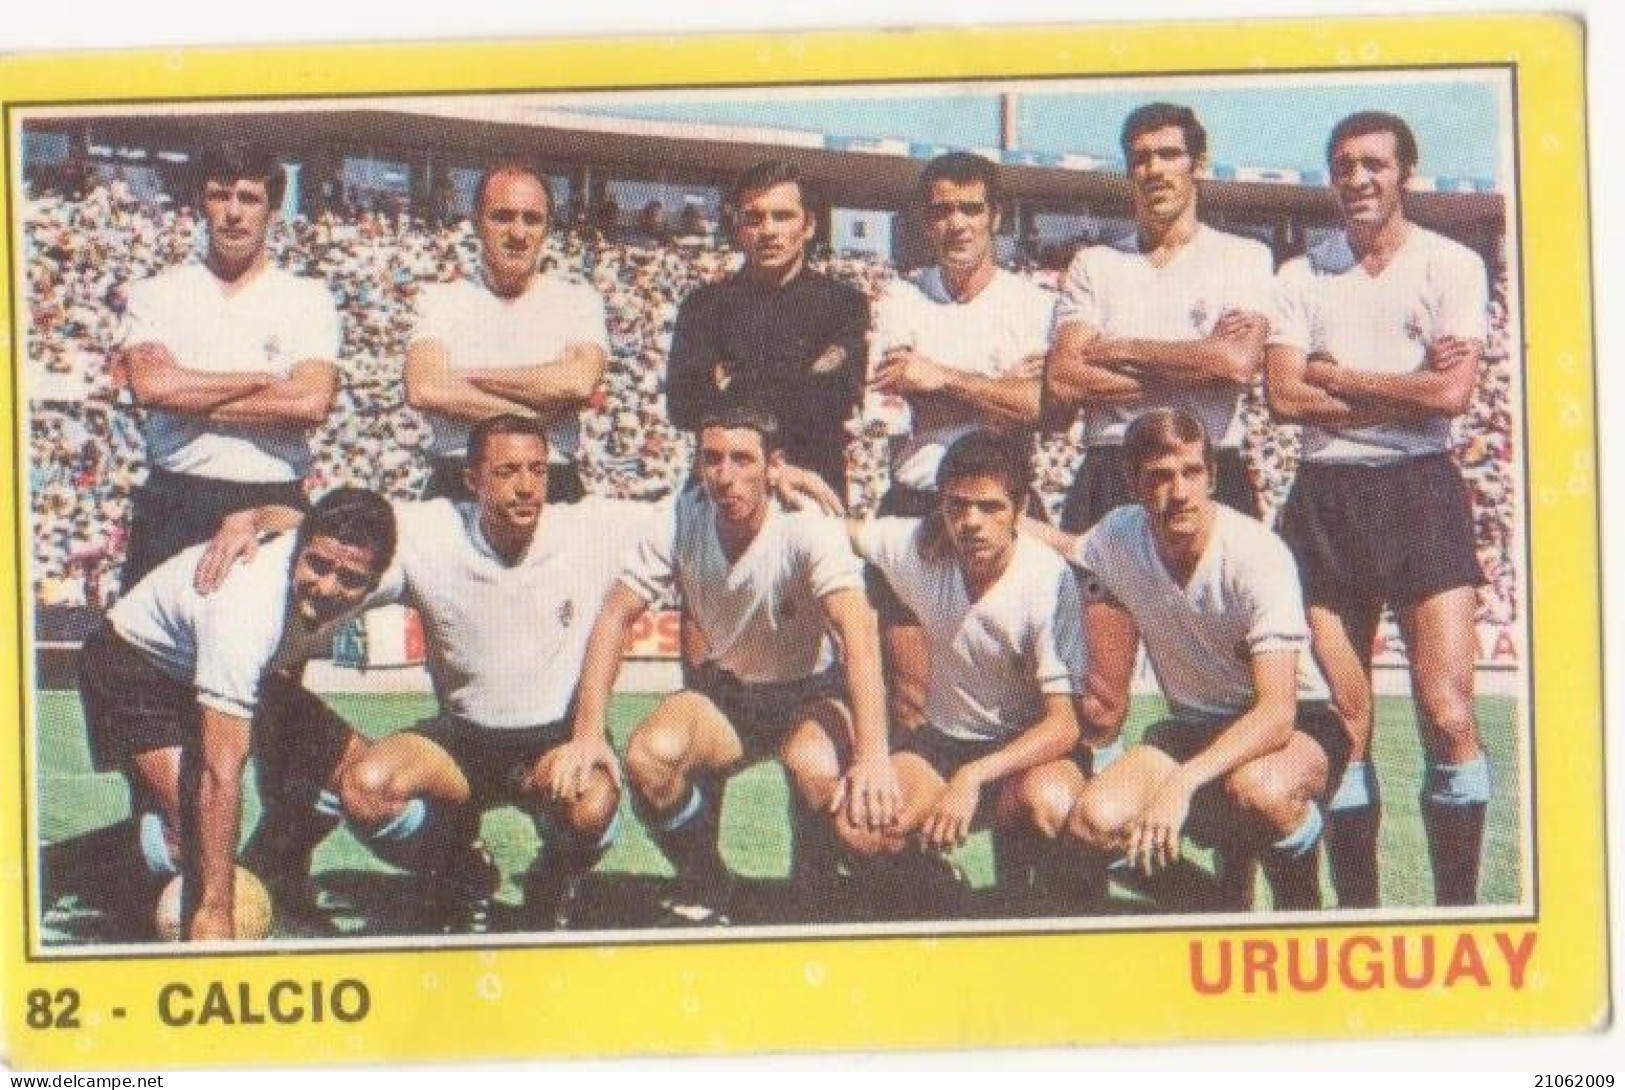 82 NAZIONALE URUGUAY CALCIO FOOTBALL SOCCER - VALIDA - CAMPIONI DELLO SPORT PANINI 1970-71 - Trading Cards